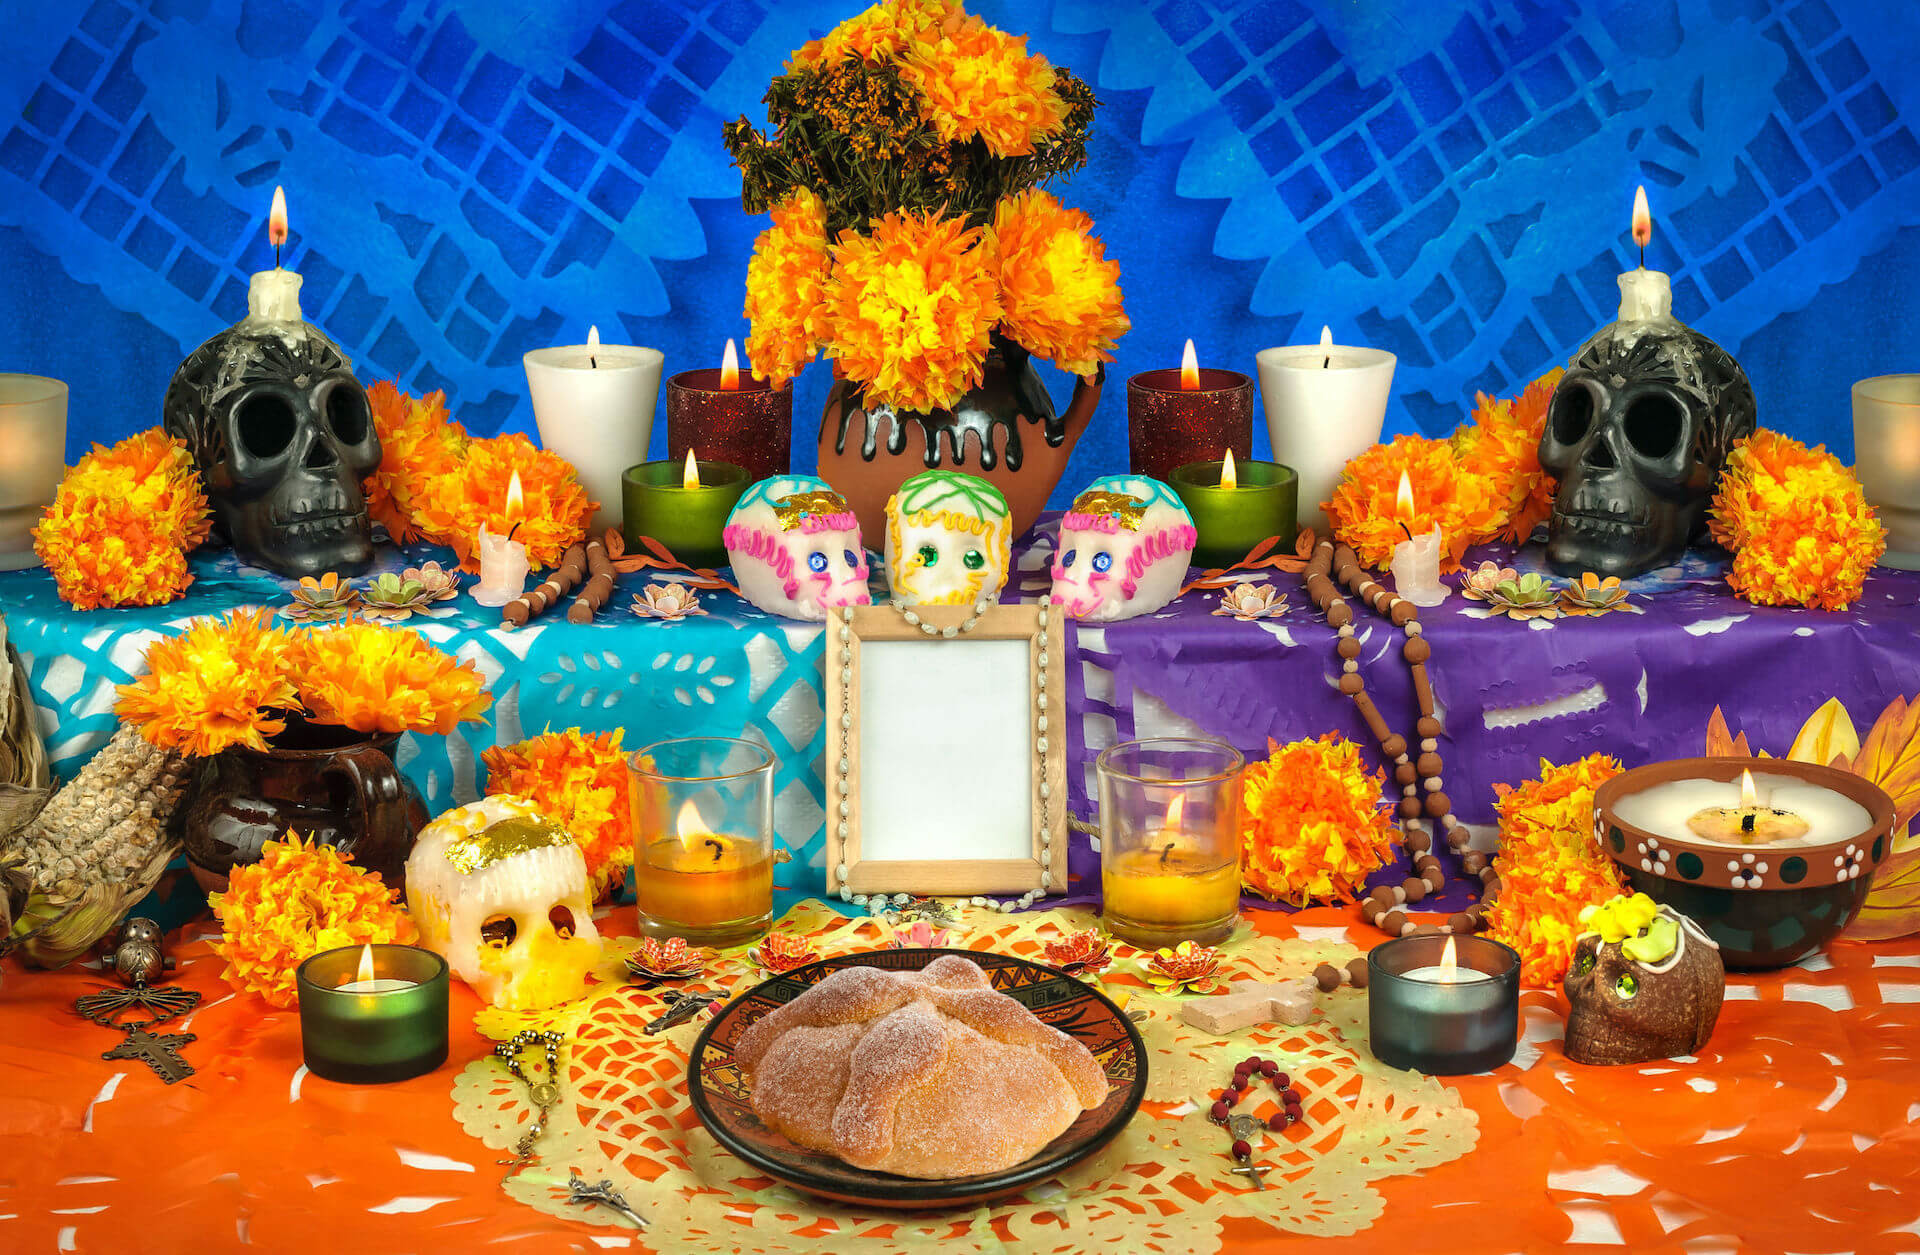 Día De Los Muertos: 10 Curiosities About The Feast Of The Dead In Mexico